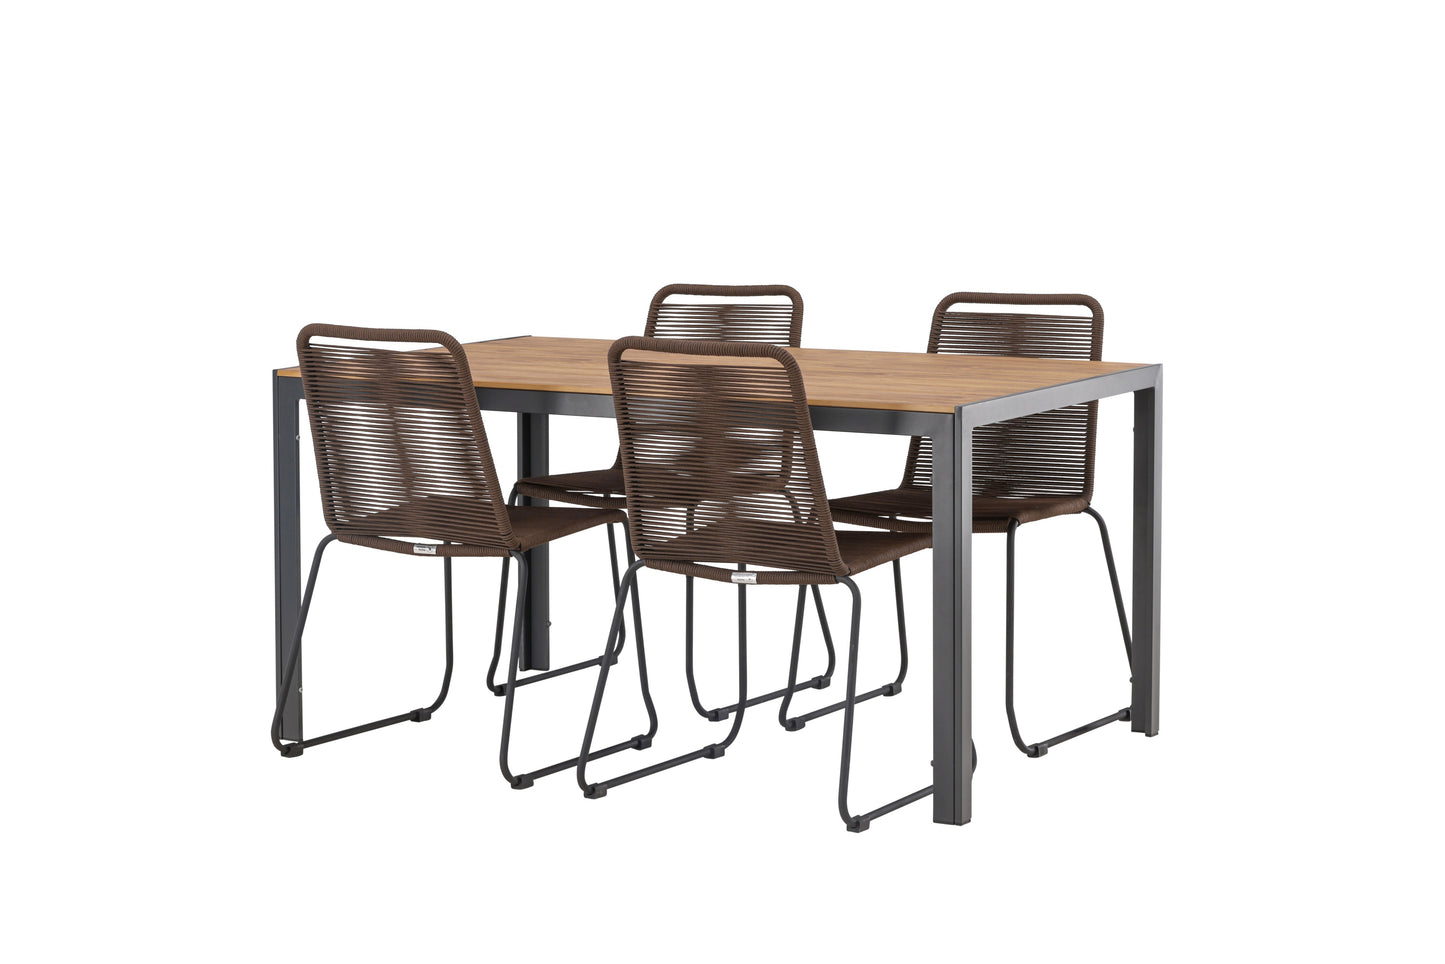 Break - Spisebord, Aluminium - Sort / Natur Rektangulær 90*150* + Lidos stol Aluminium - Sort